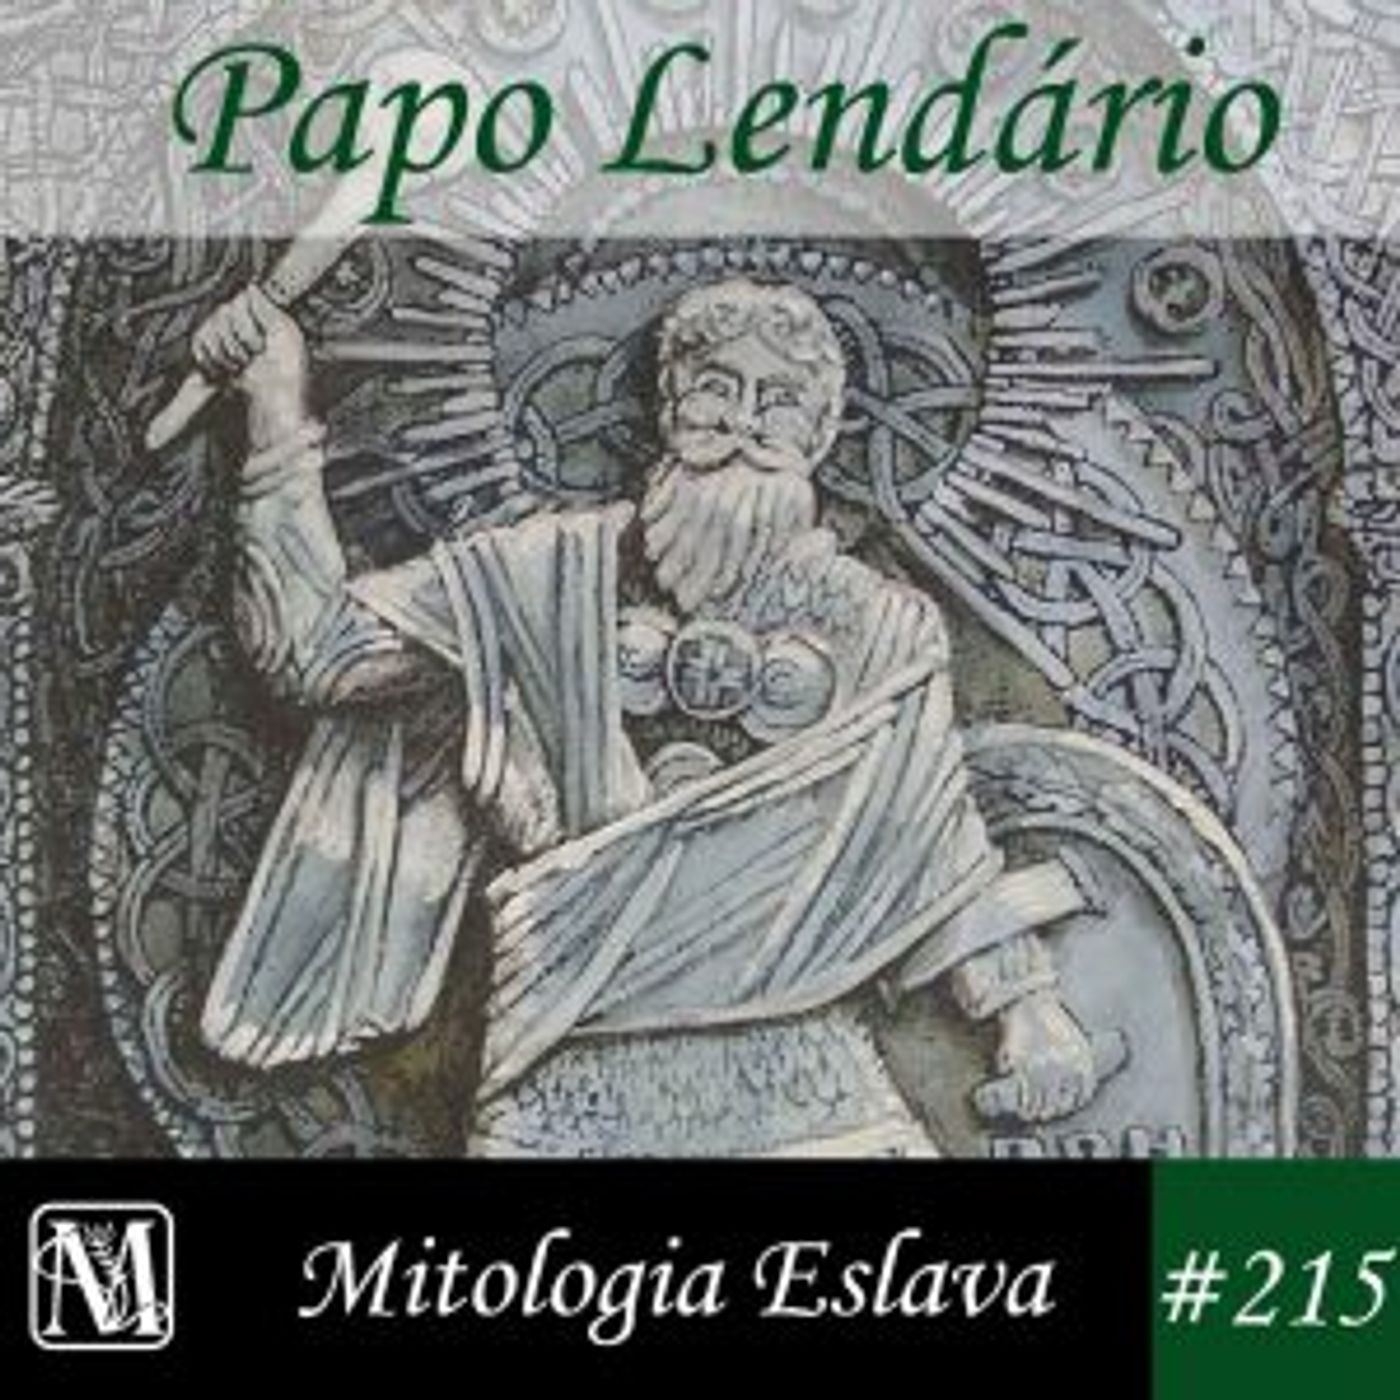 Papo Lendário #215 – Mitologia Eslava